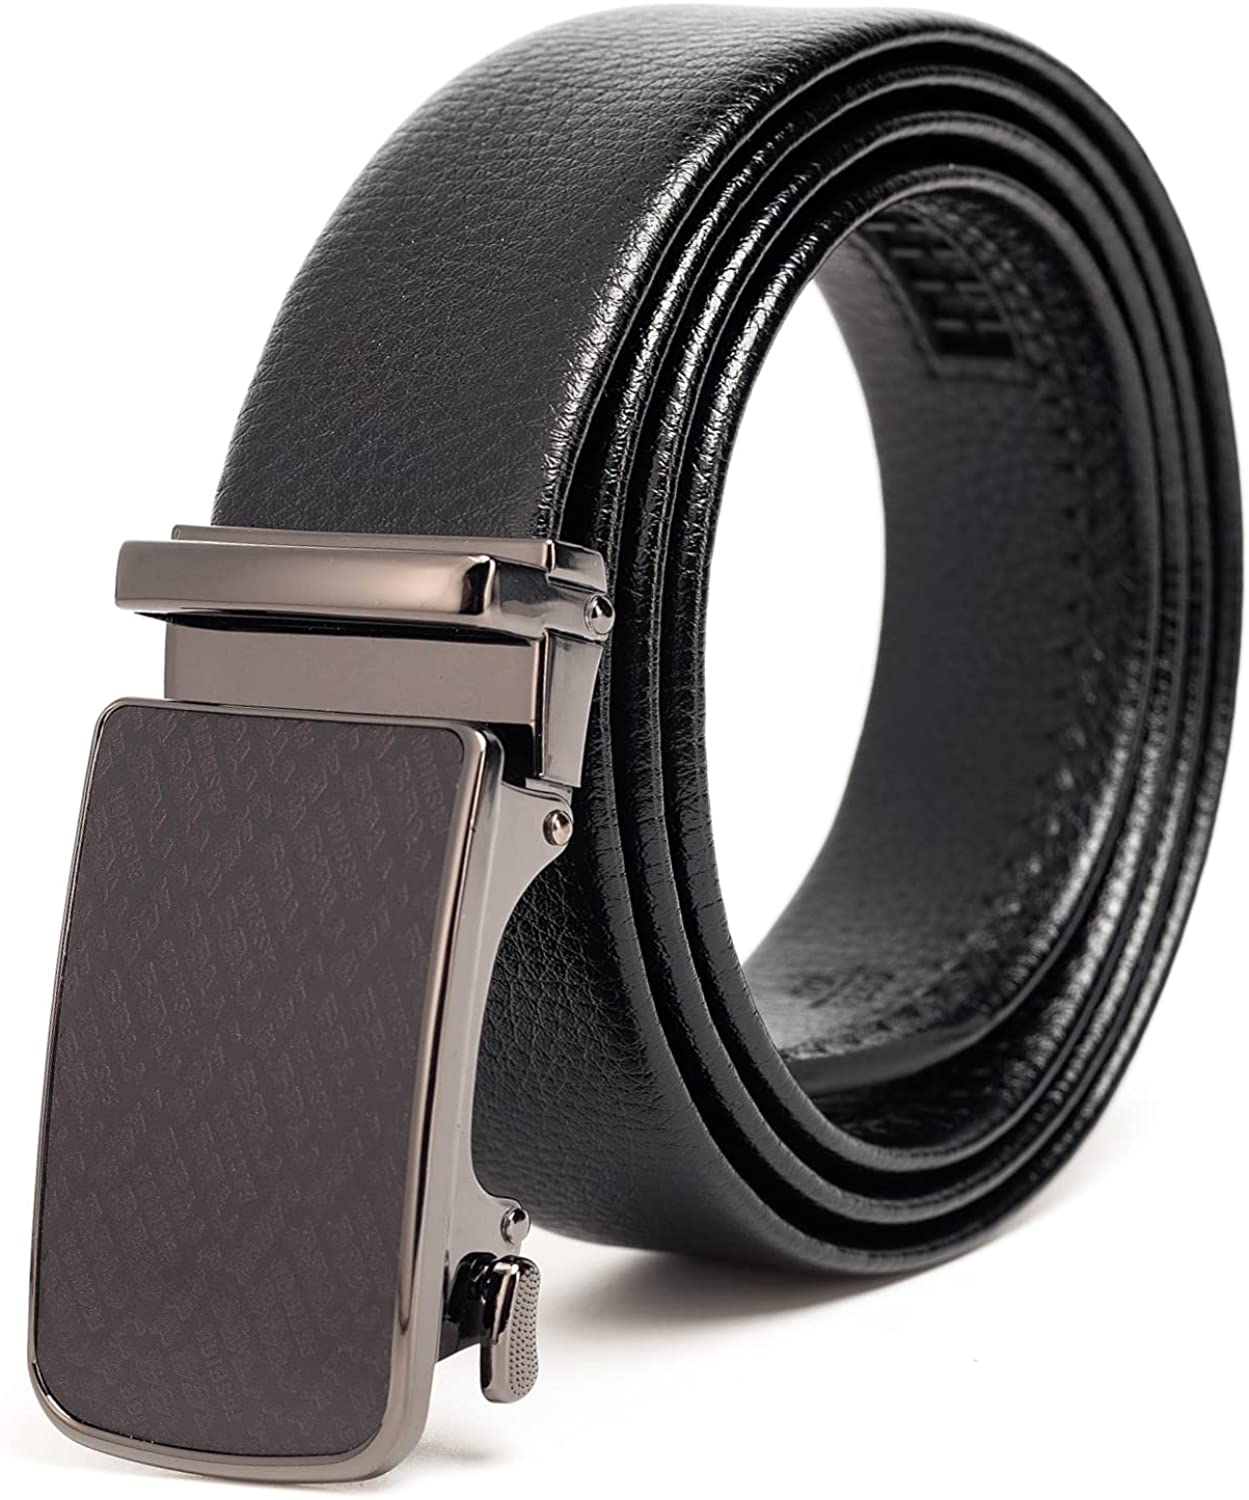 IndPon Mens Belt 100% Leather Ratchet, Casual Golf Belt, Dress Belt with Automatic Buckle, 1.4" Wide Adjustable Slide